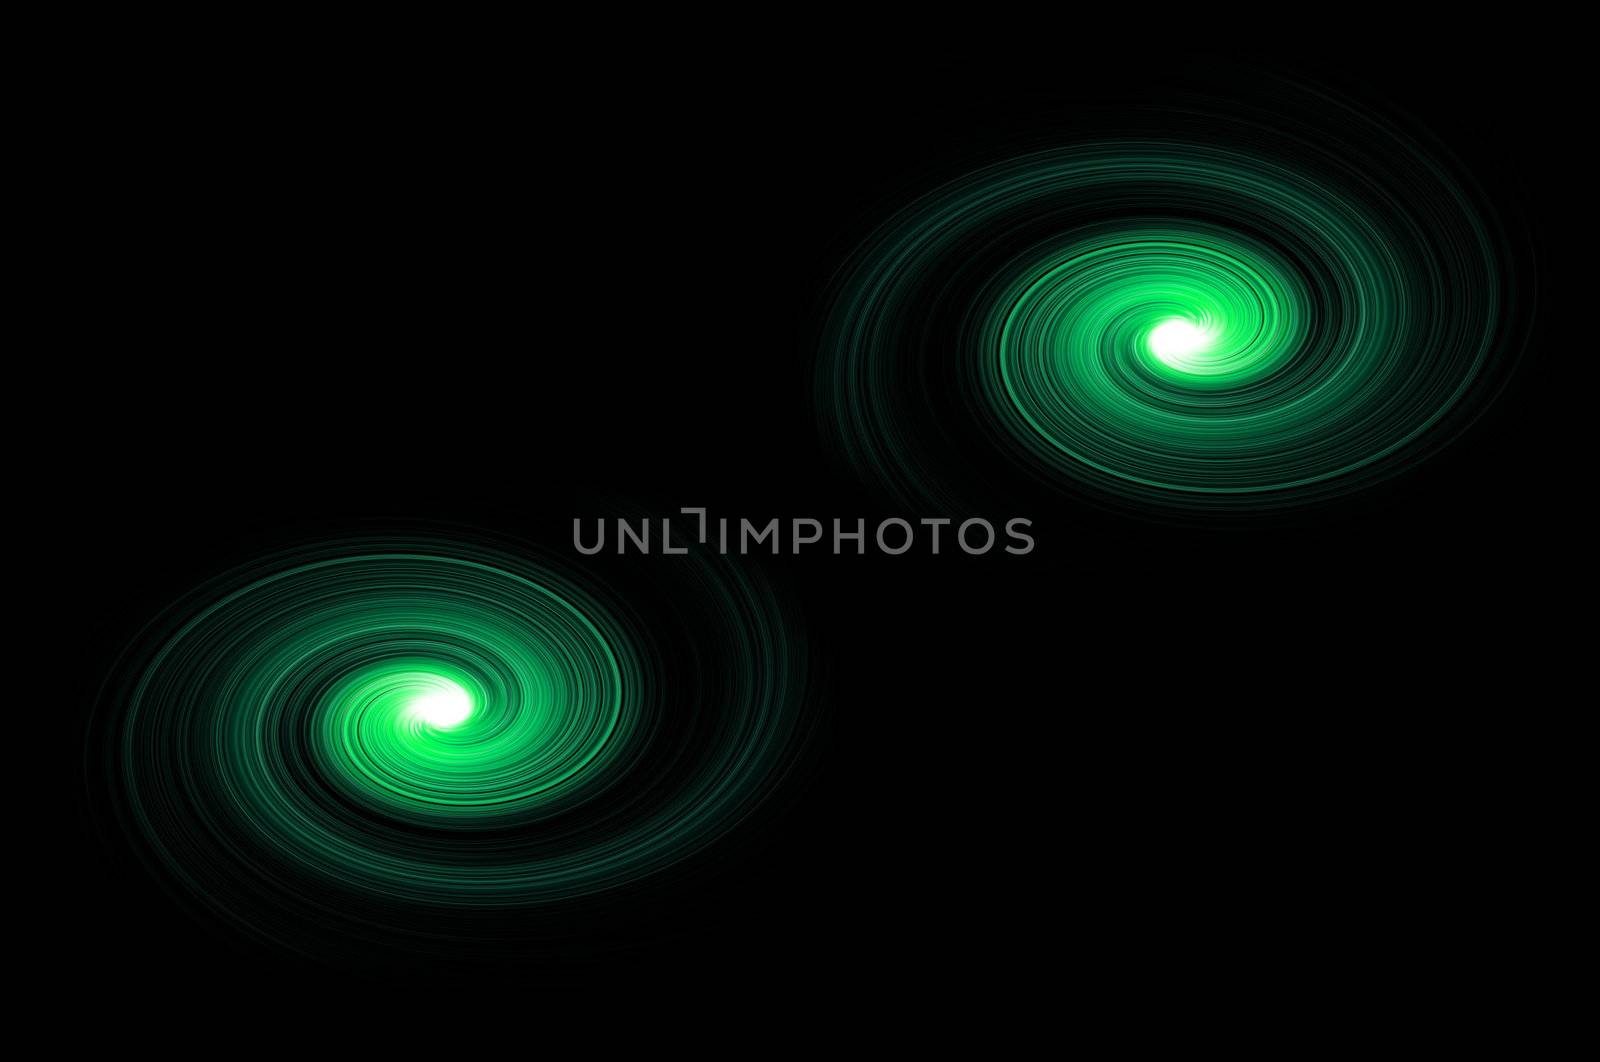 Celestial green swirls by 72soul